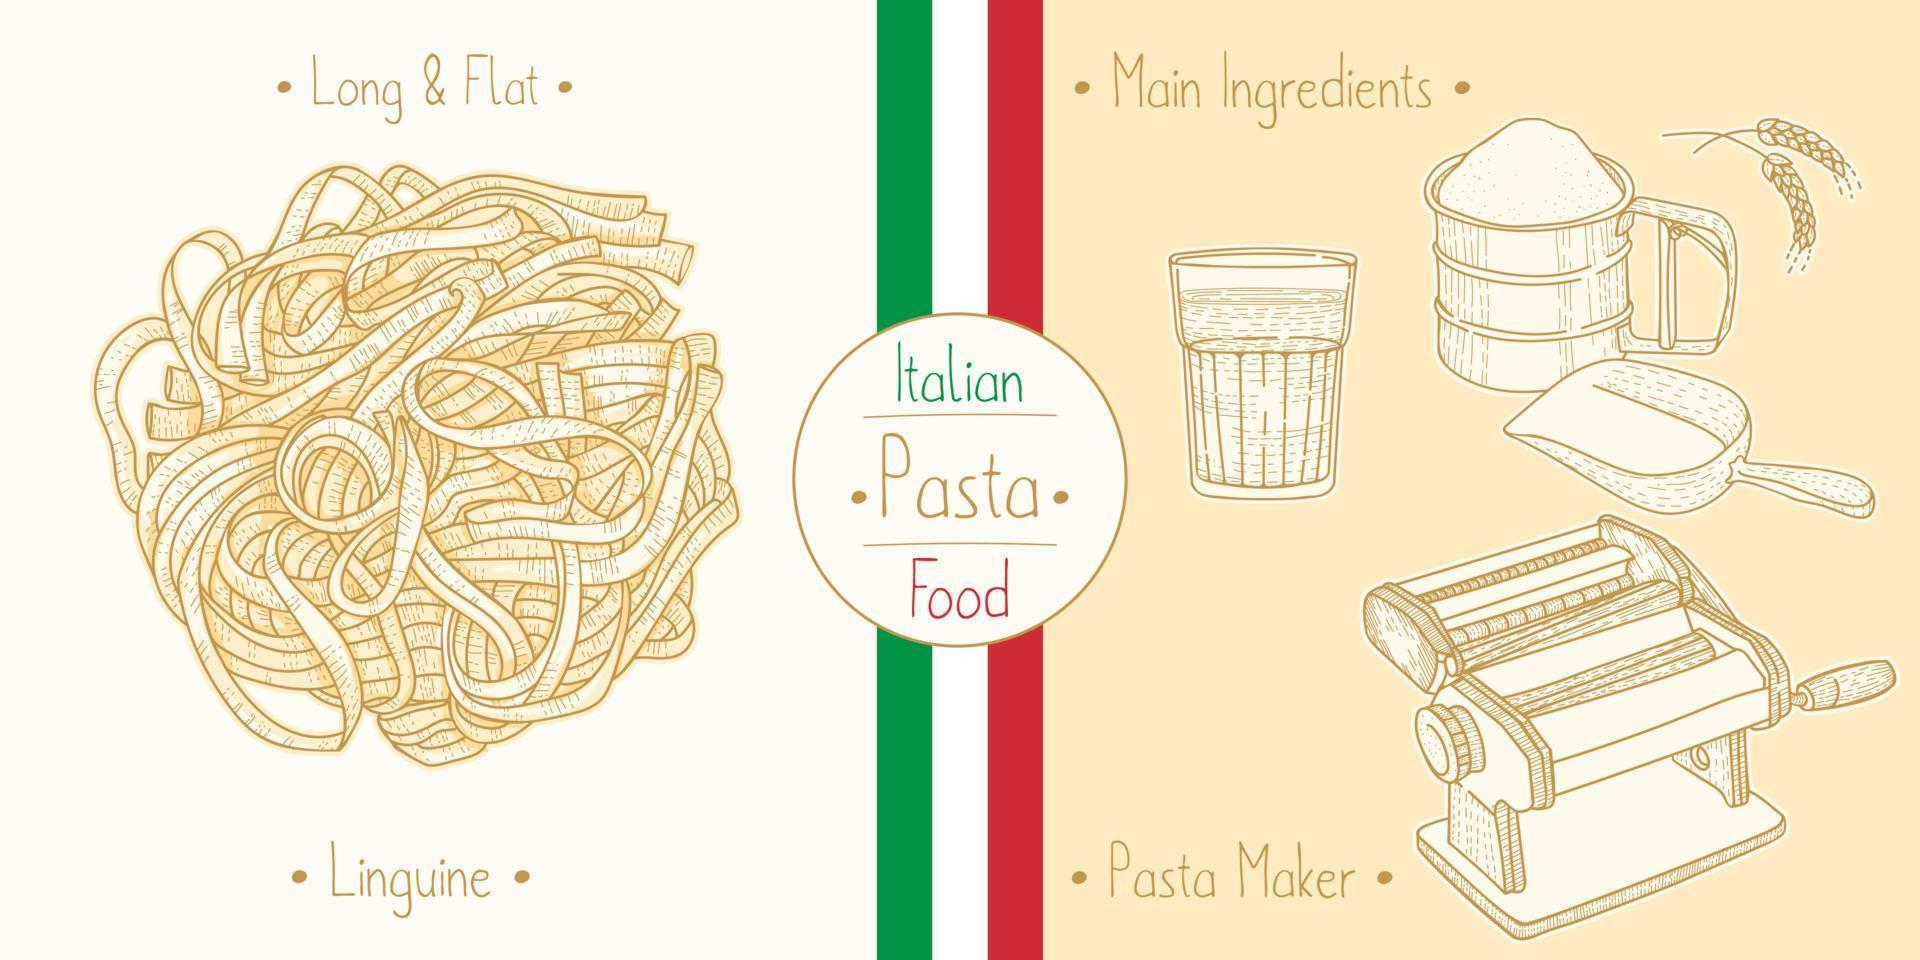 laga italiensk mat linguine pasta och huvudingredienser och pastatillverkare utrustning, skissa illustration i vintage stil vektor